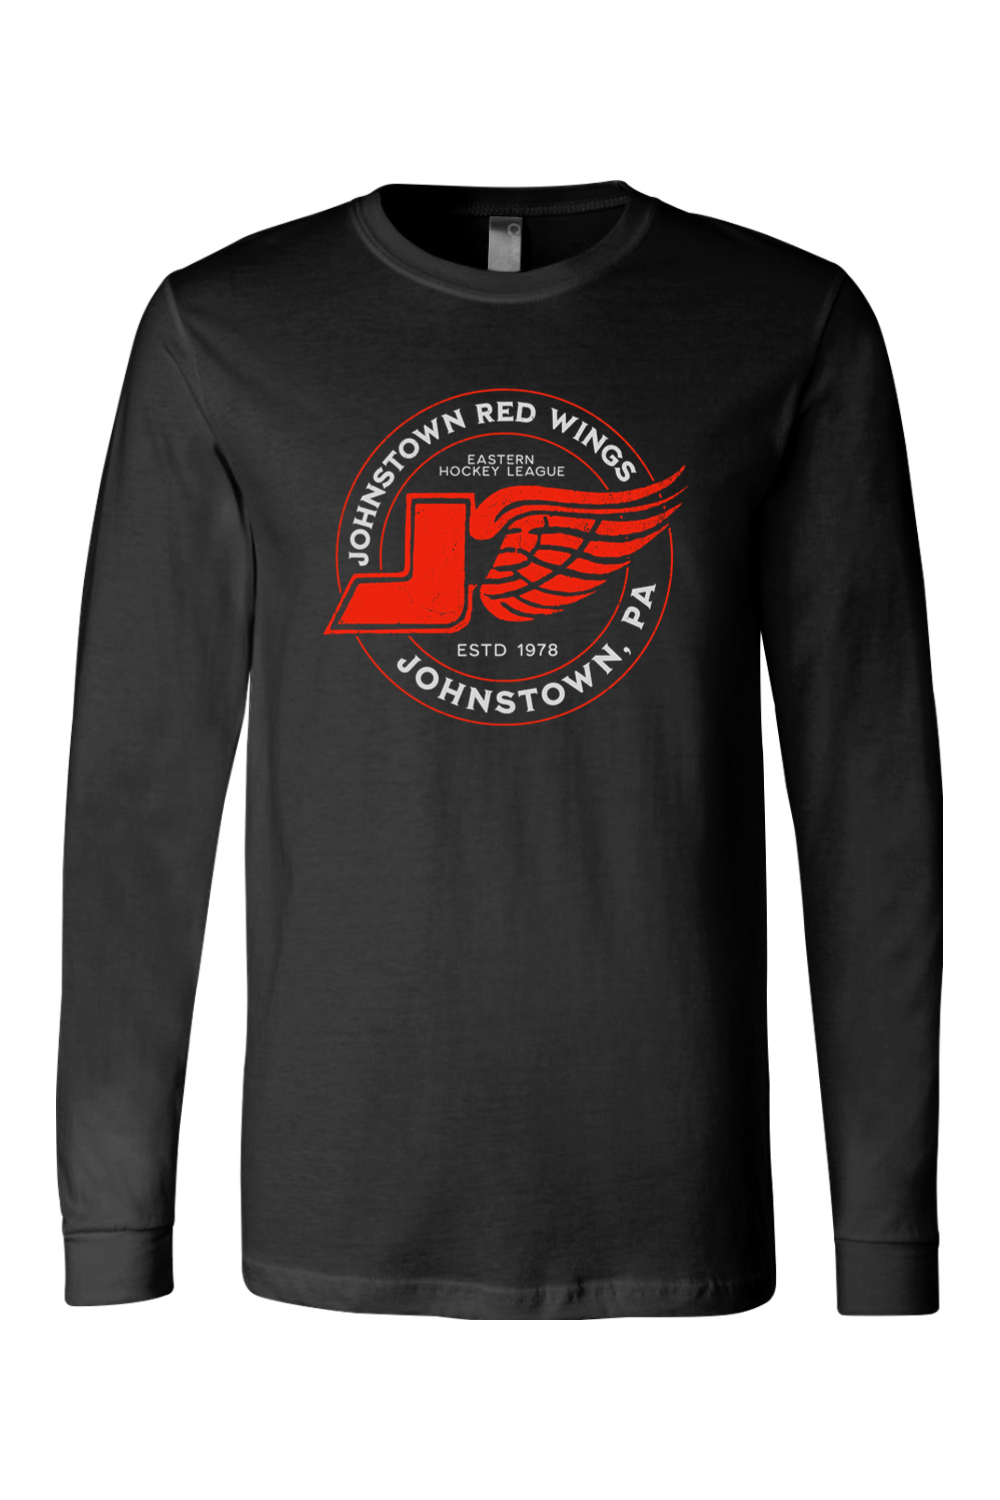 Johnstown Red Wings Hockey - Long Sleeve Tee